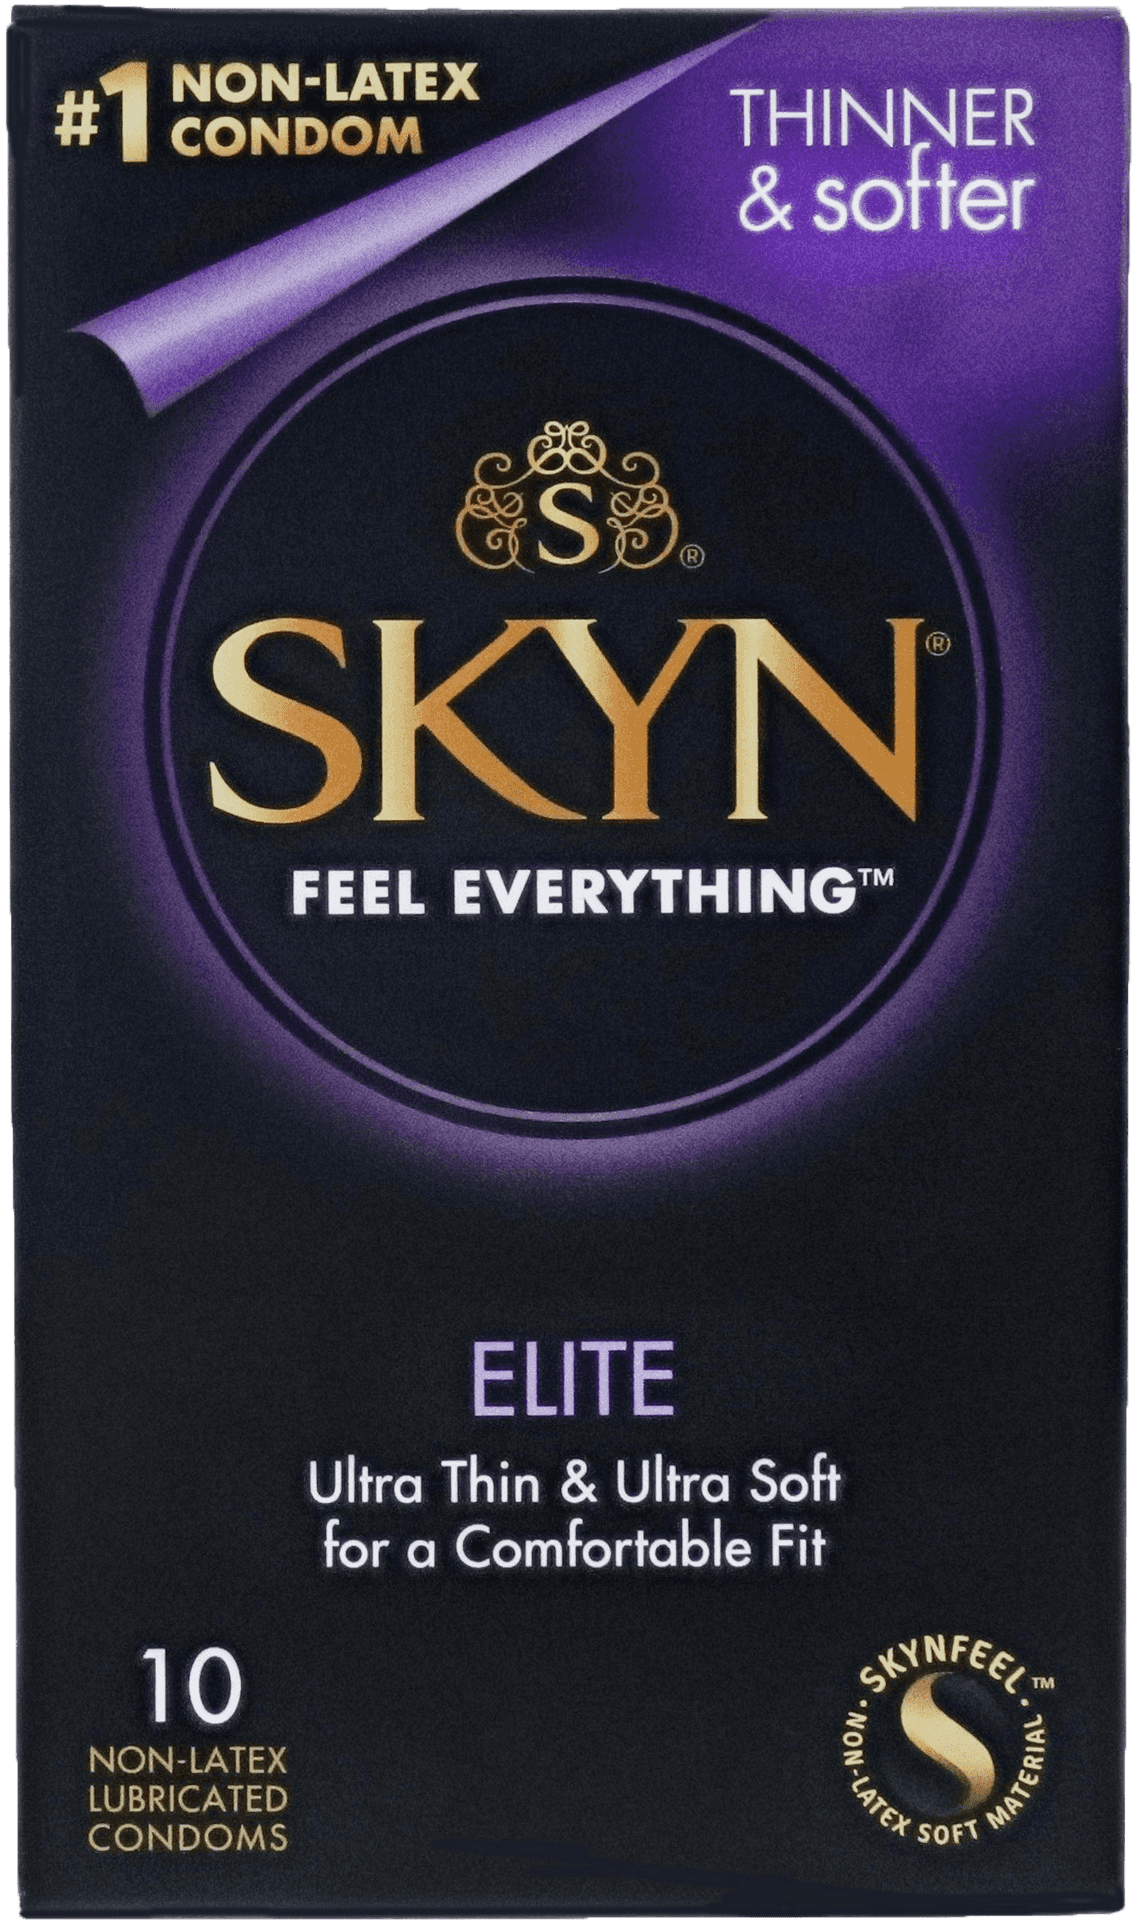 Skyn Elite Condom Package PNG image